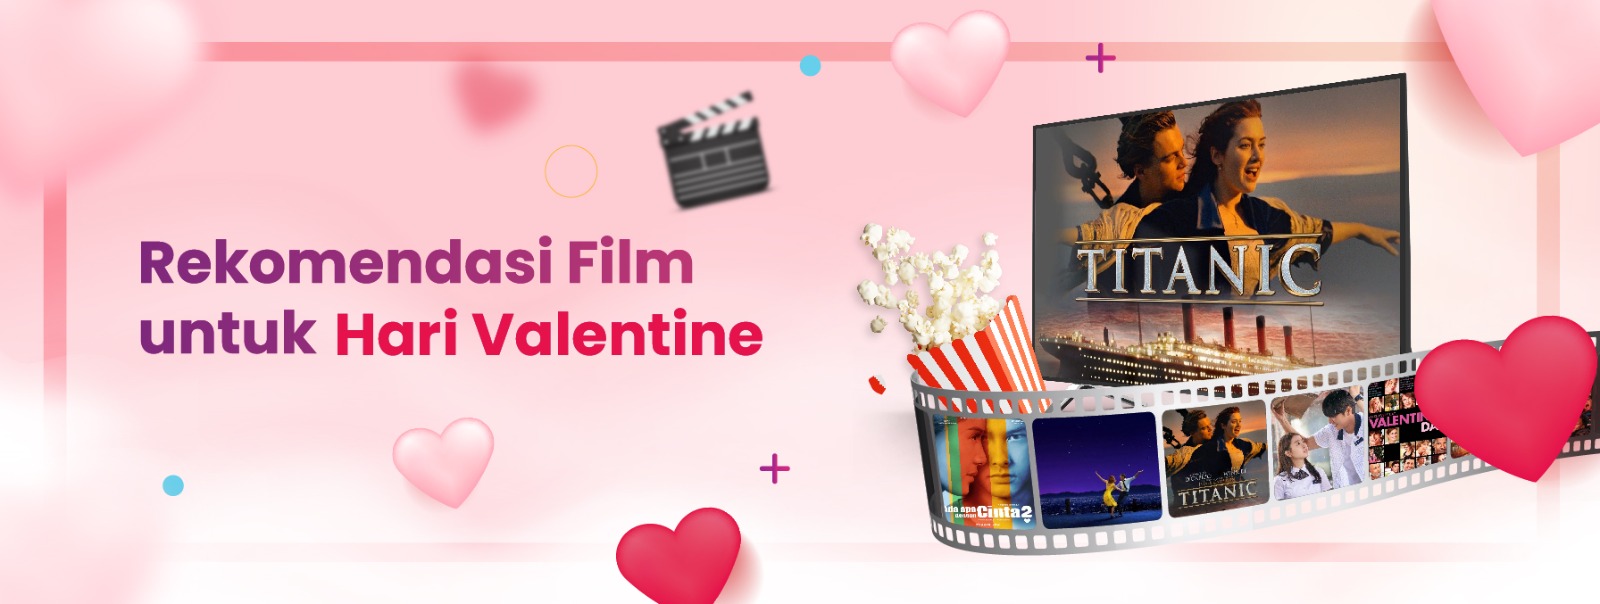 Rekomendasi Film Untuk Hari Valentine